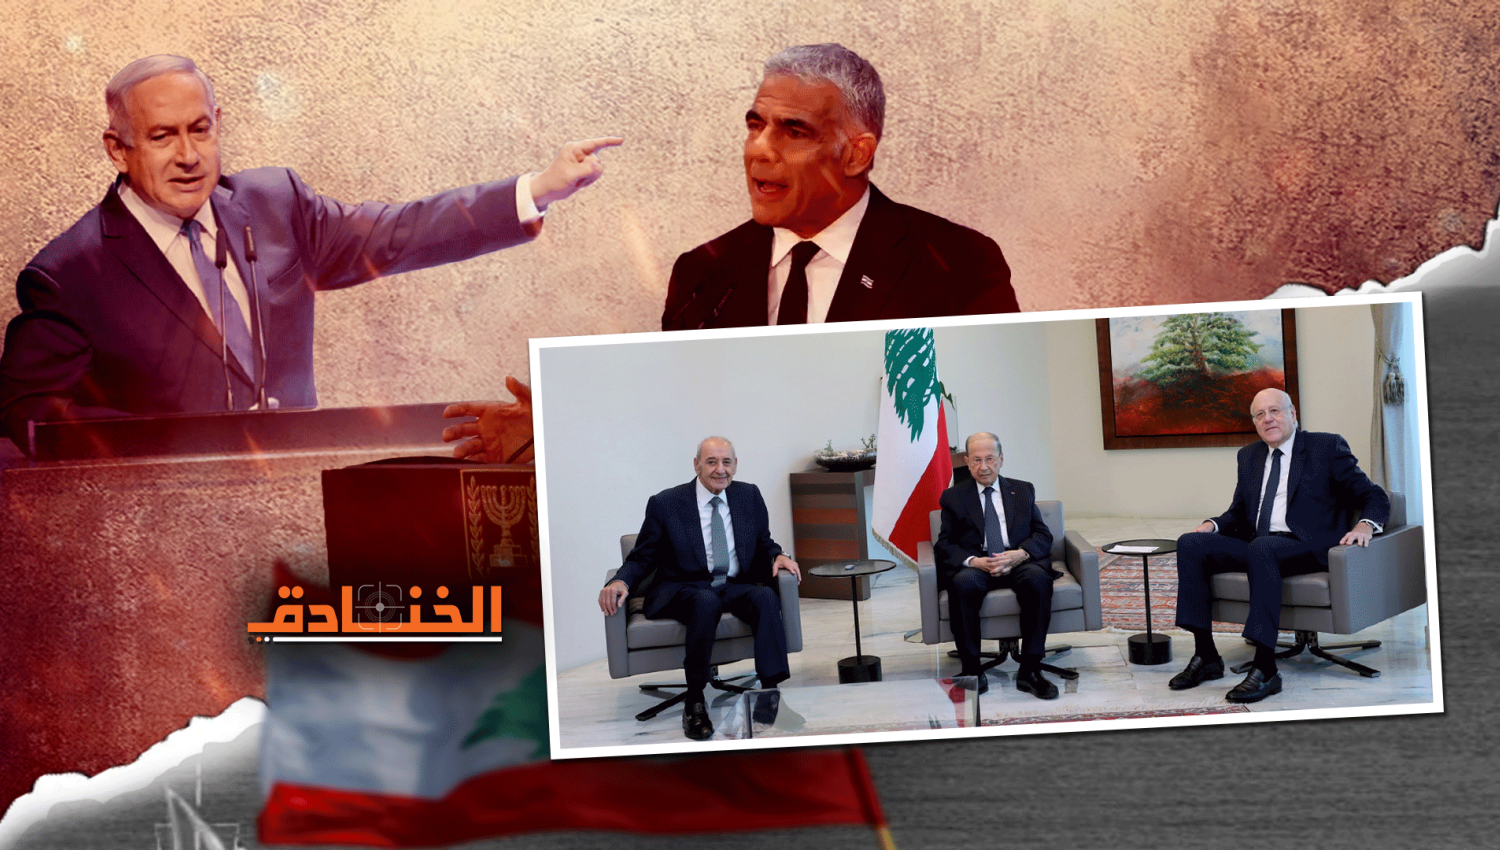 الاتفاق البحري: انجاز لبناني وأزمة سياسية إسرائيلية